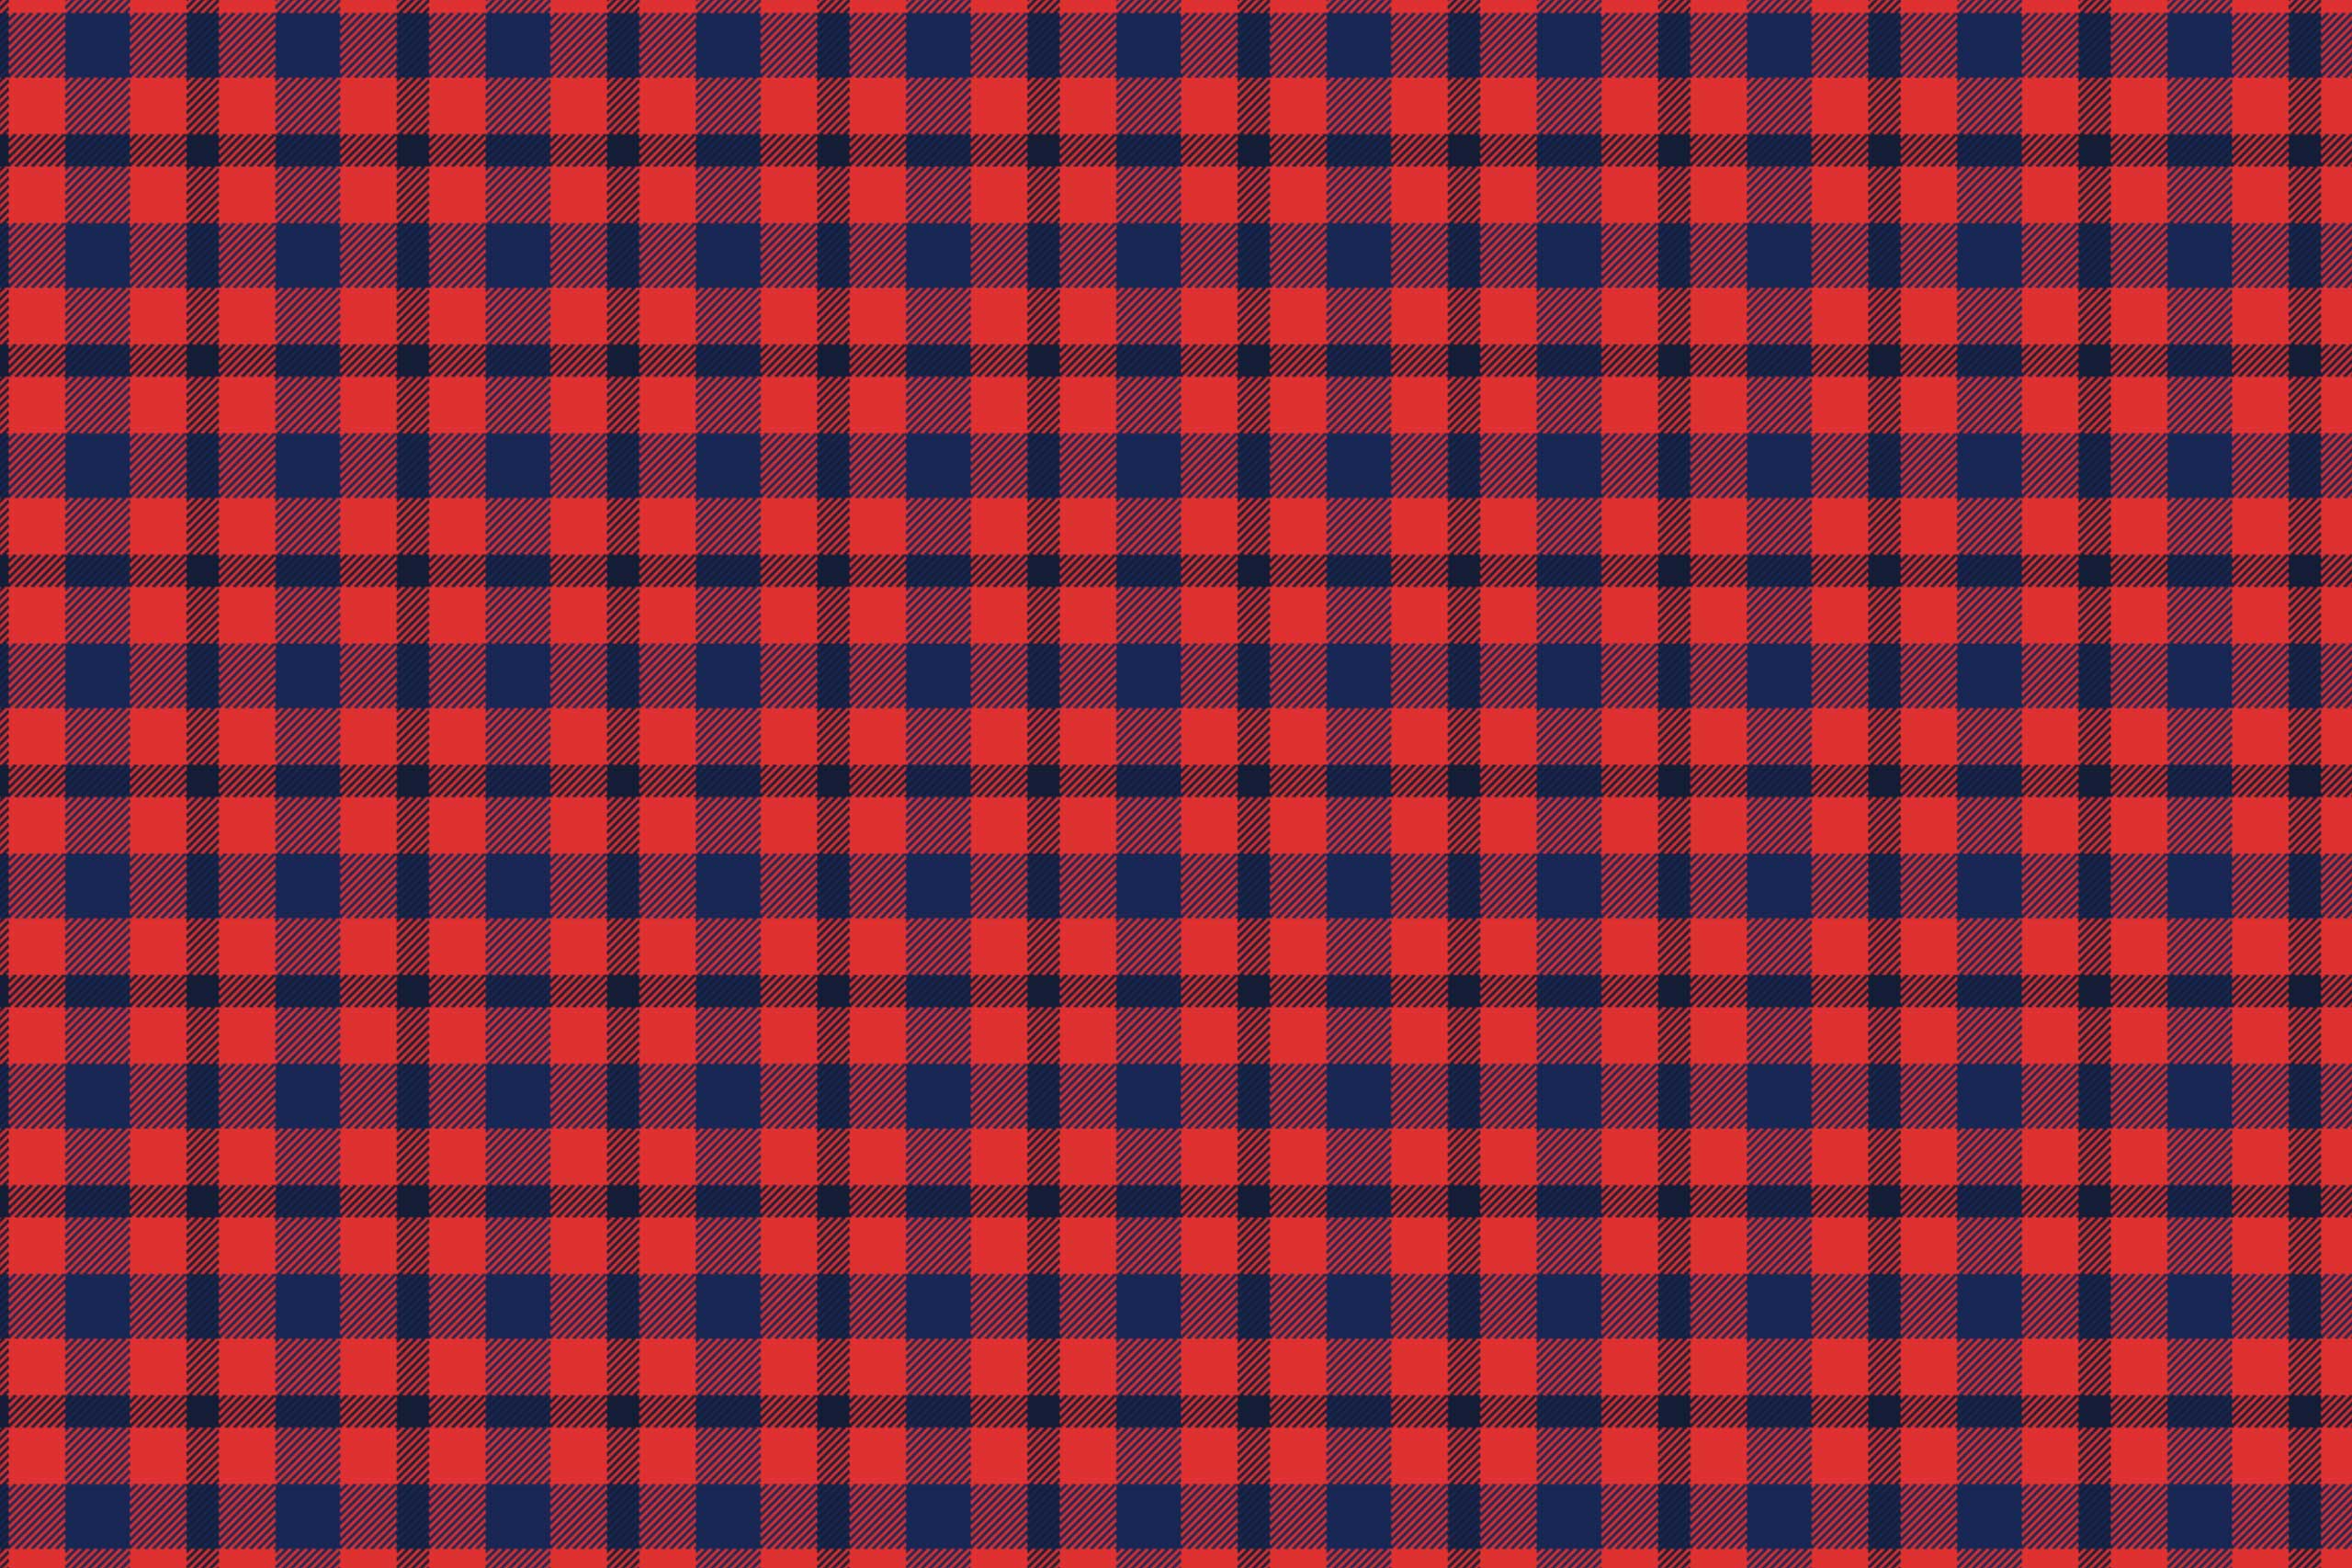 Текстура красная ткань шотландка в прямоугольные синие клетки.